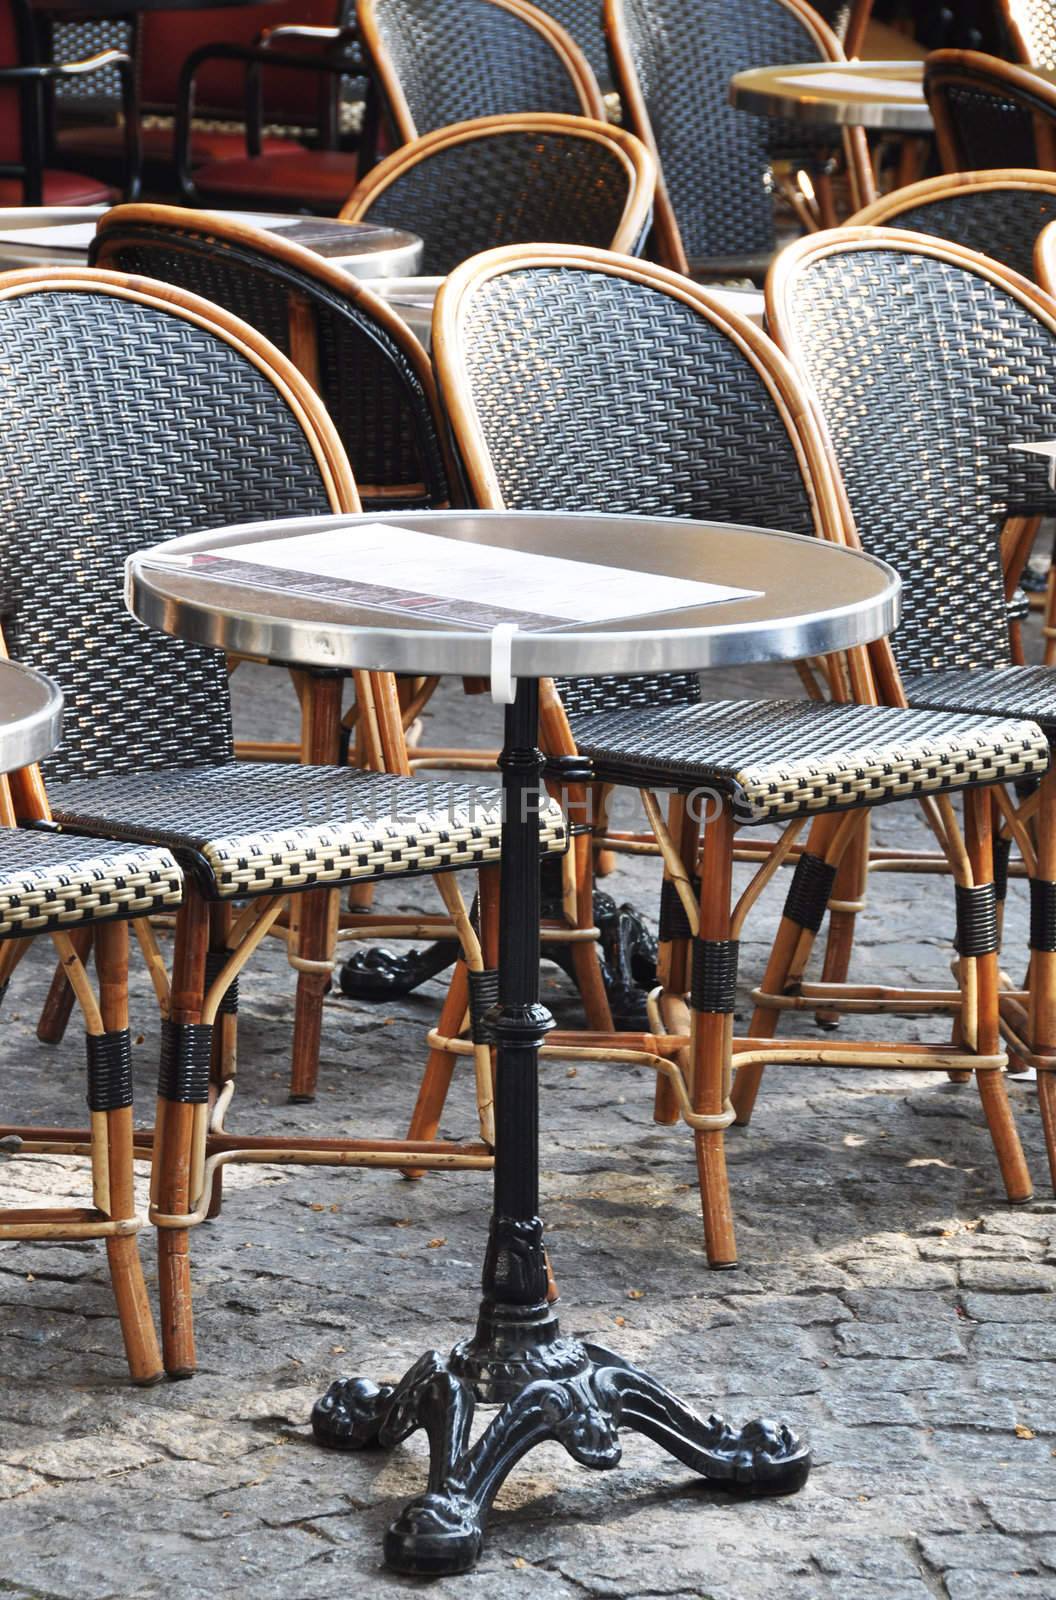 Parisian cafe terrace by dutourdumonde